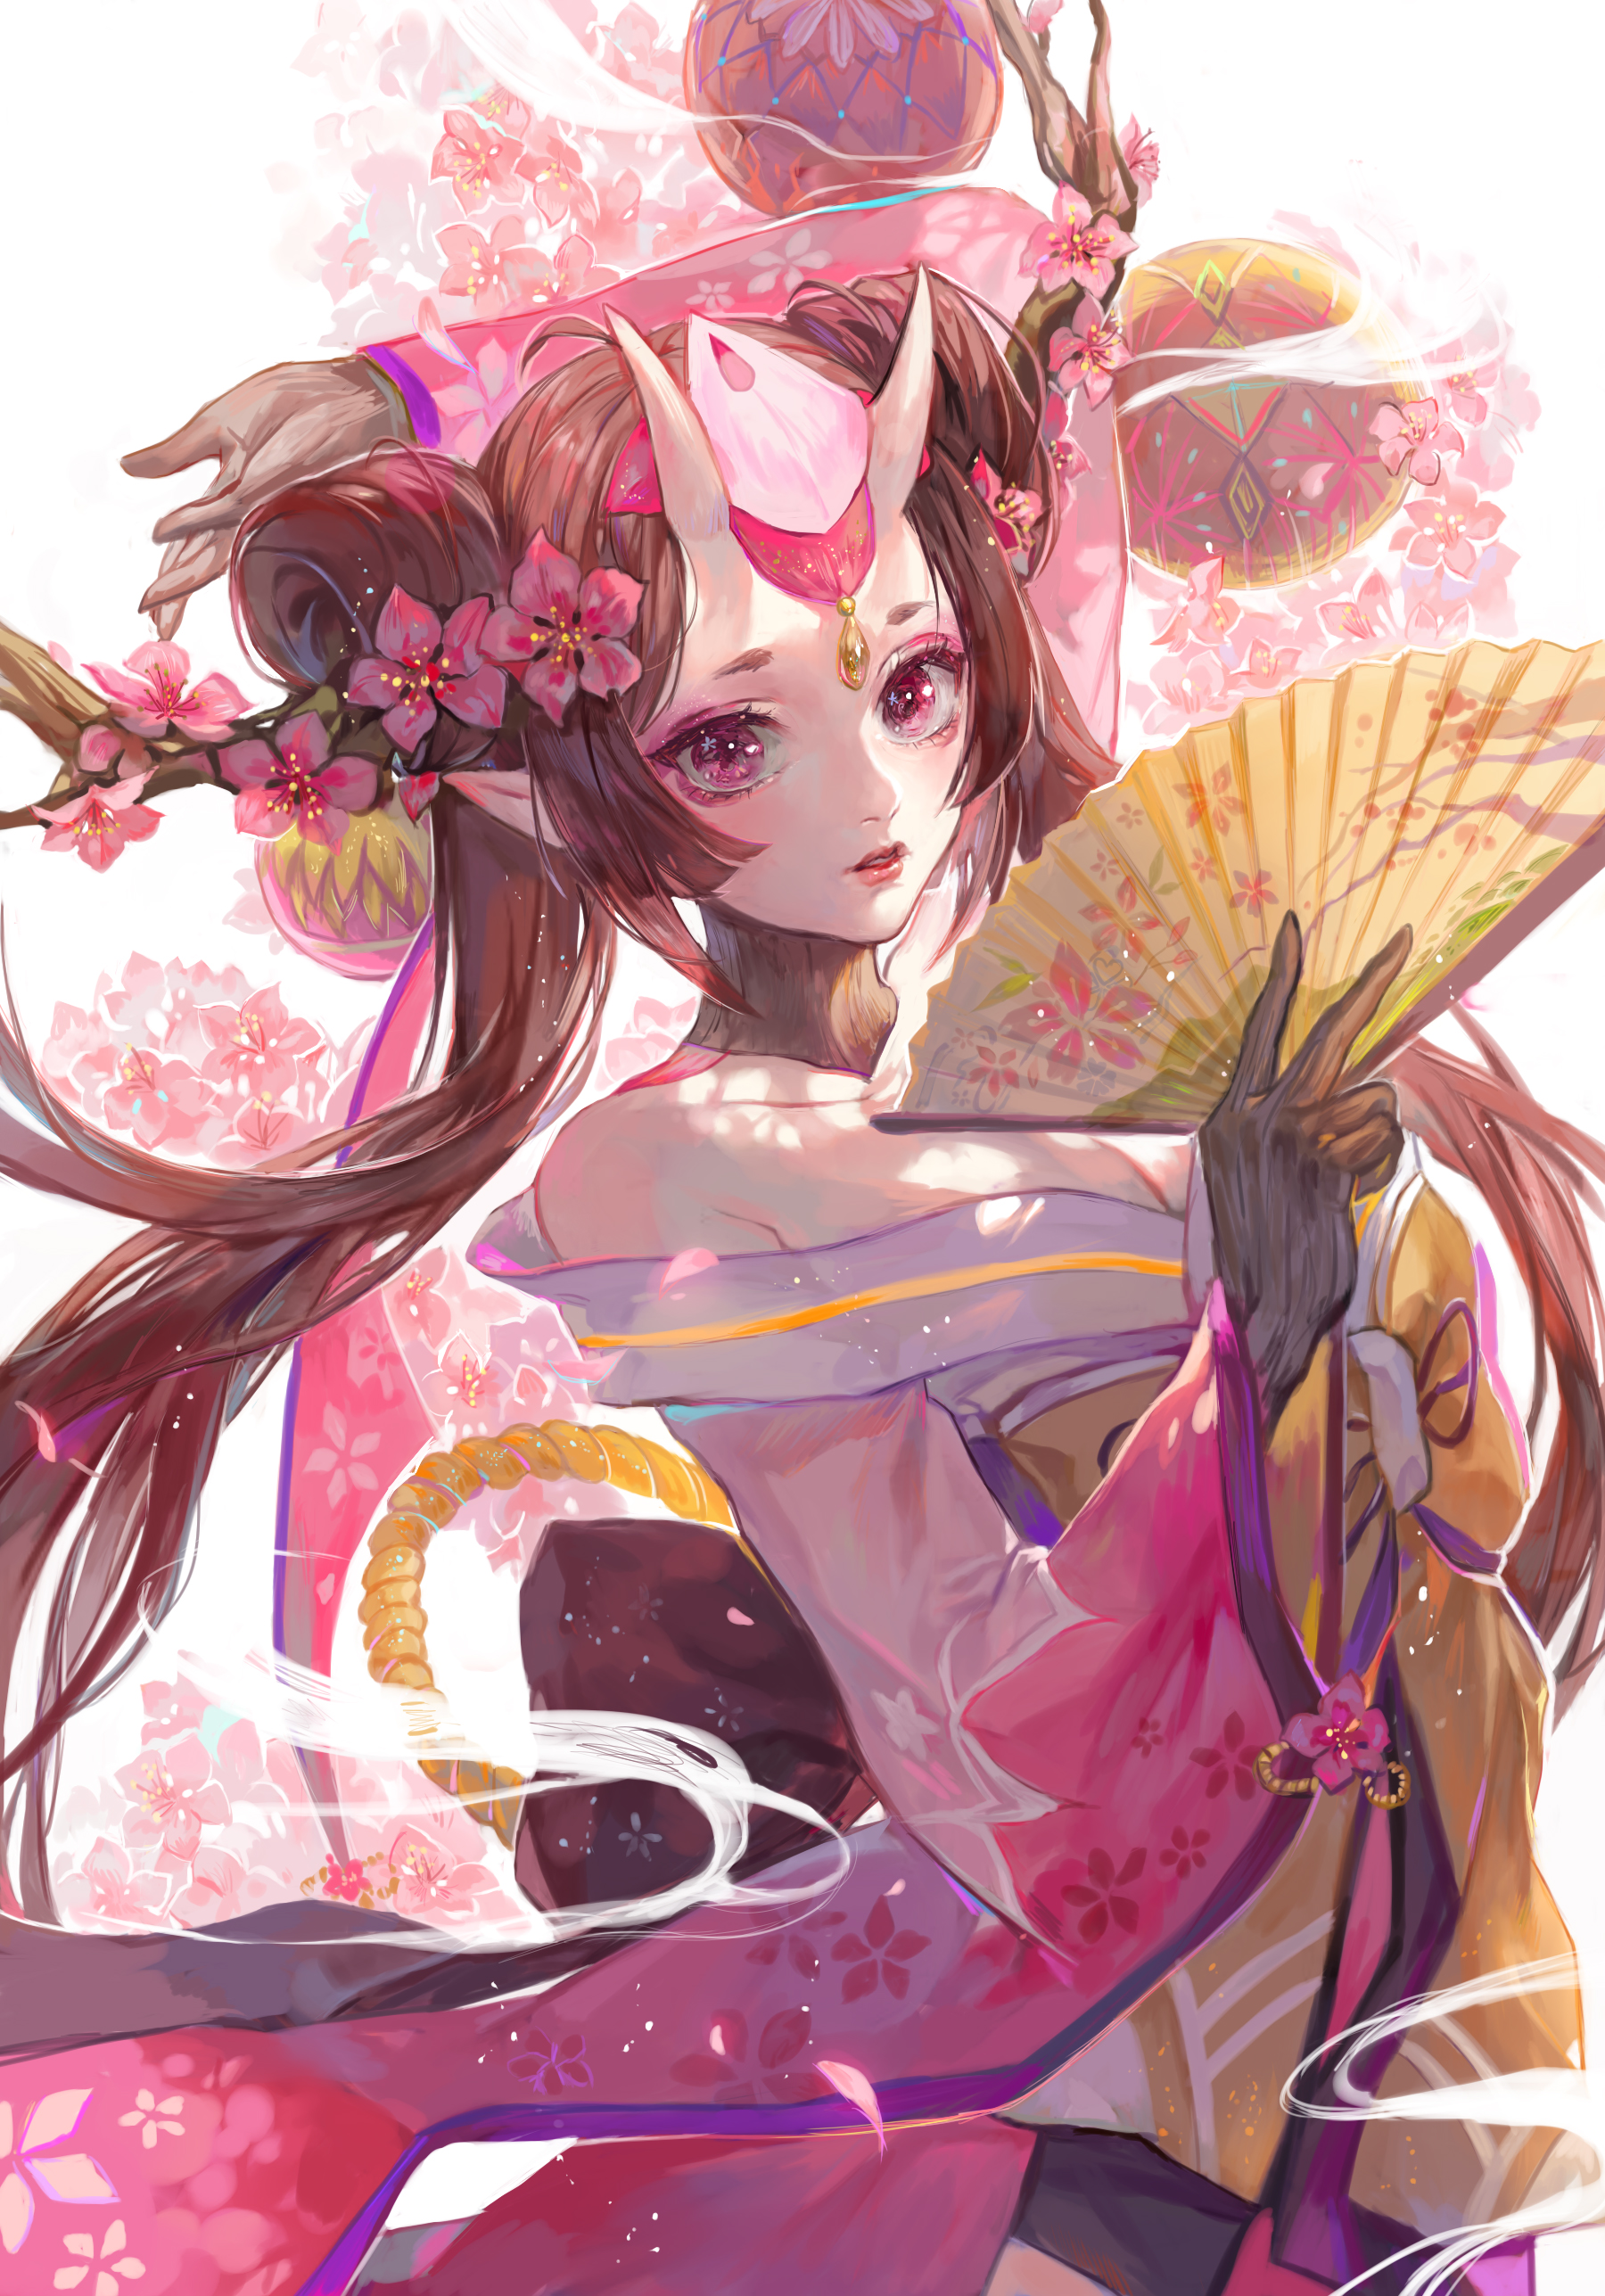 Women Fantasy Girl Horns Brunette Long Hair Pink Eyes Pointed Ears Flower In Hair Looking At Viewer  1800x2575